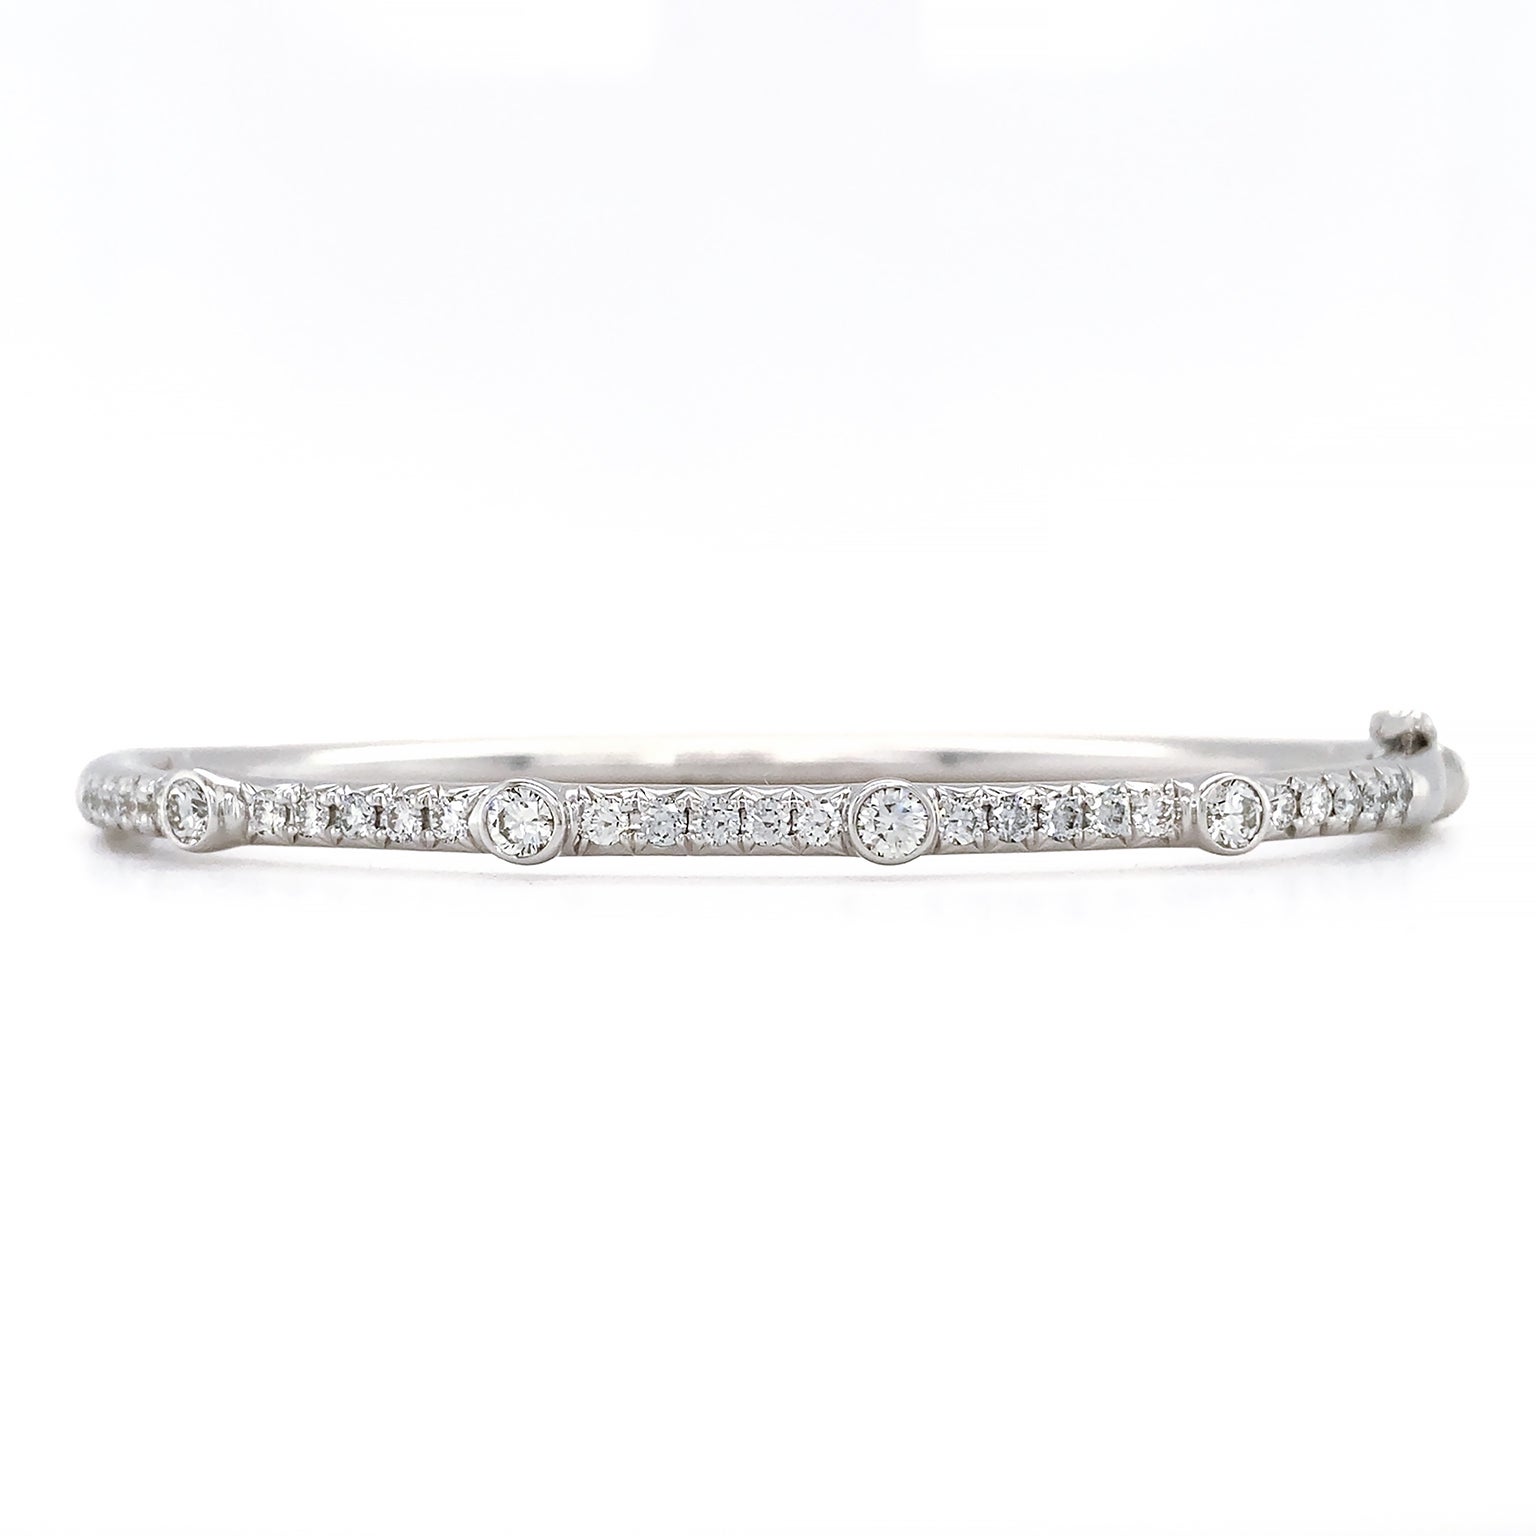 Ce bracelet est rayonnant. Un mince bracelet en or blanc 18k est rehaussé d'une rangée de diamants pavés de taille brillant sur la partie supérieure. Quatre diamants plus importants, sertis en lunette, sont dispersés sur toute la ligne. Cela